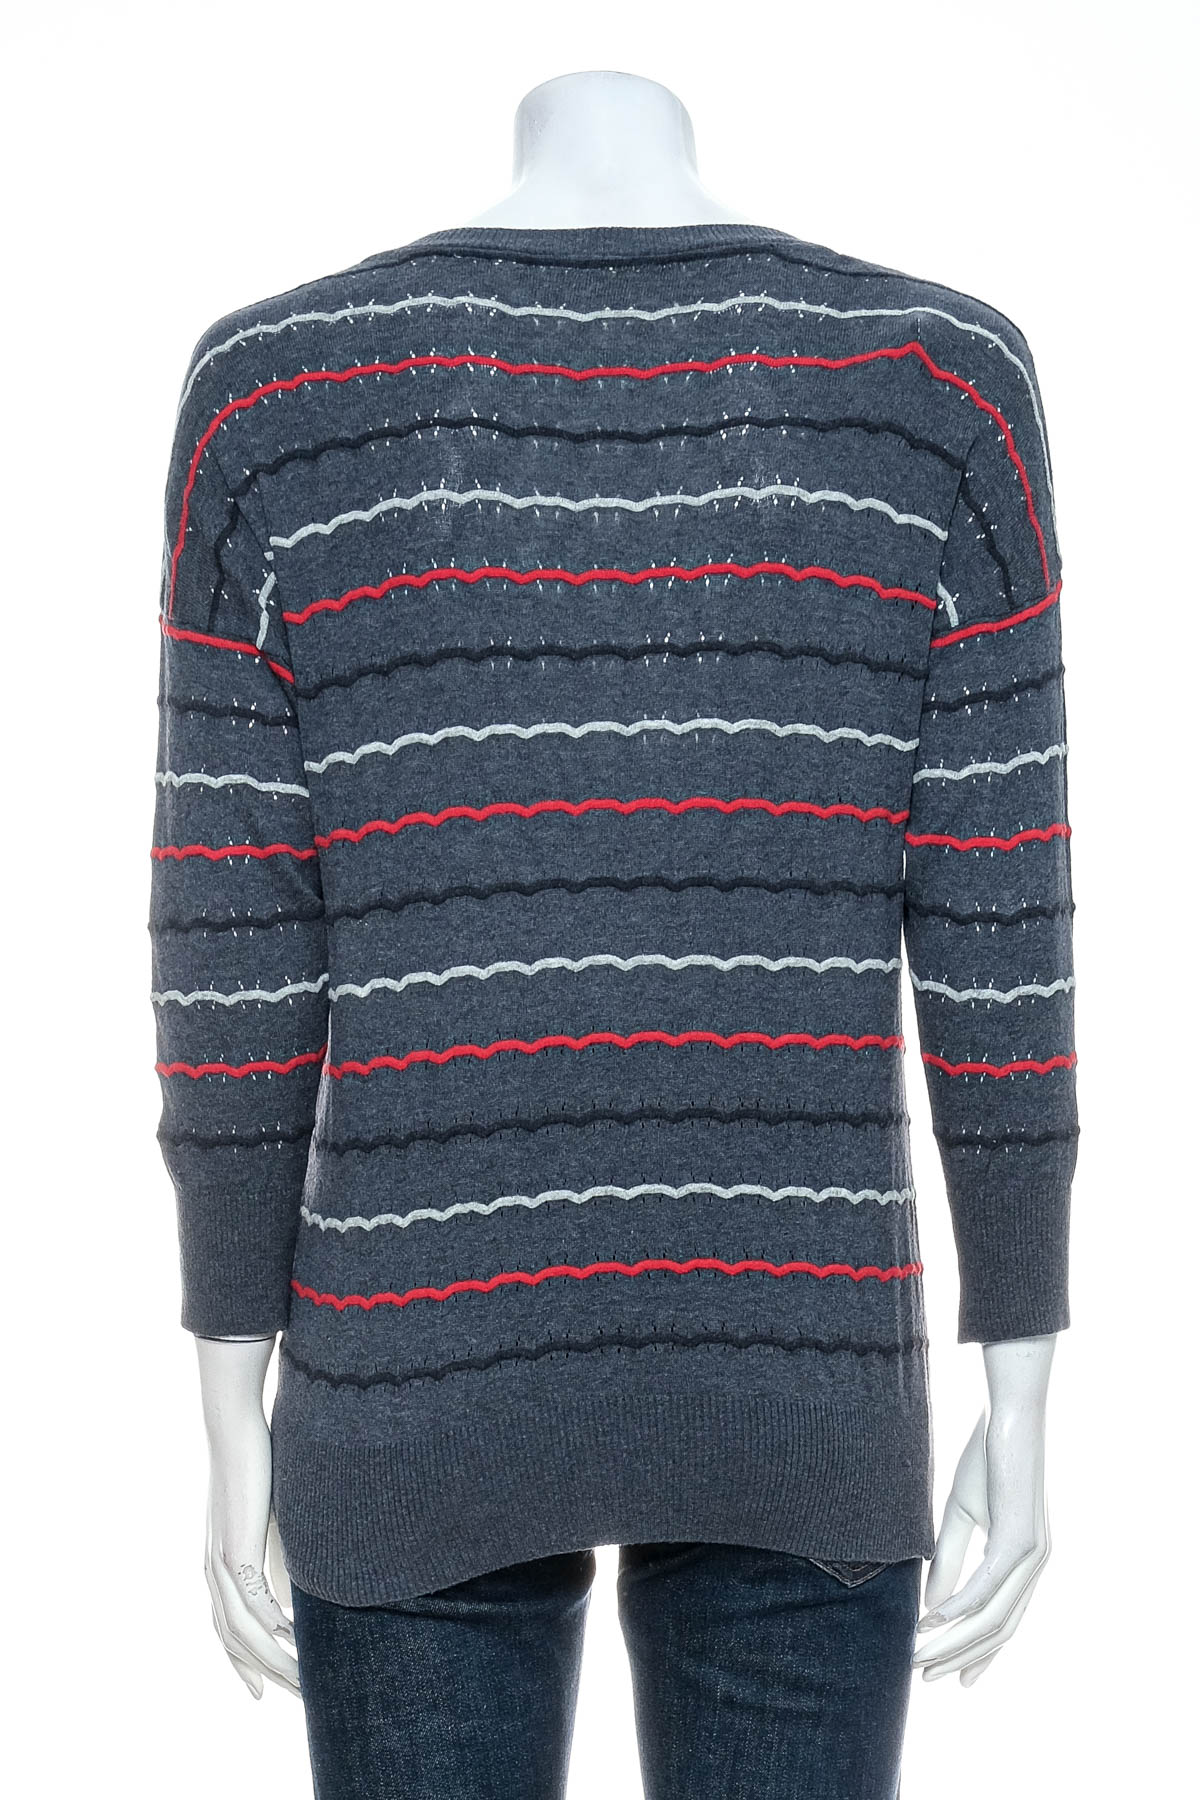 Women's sweater - NAKETANO - 1